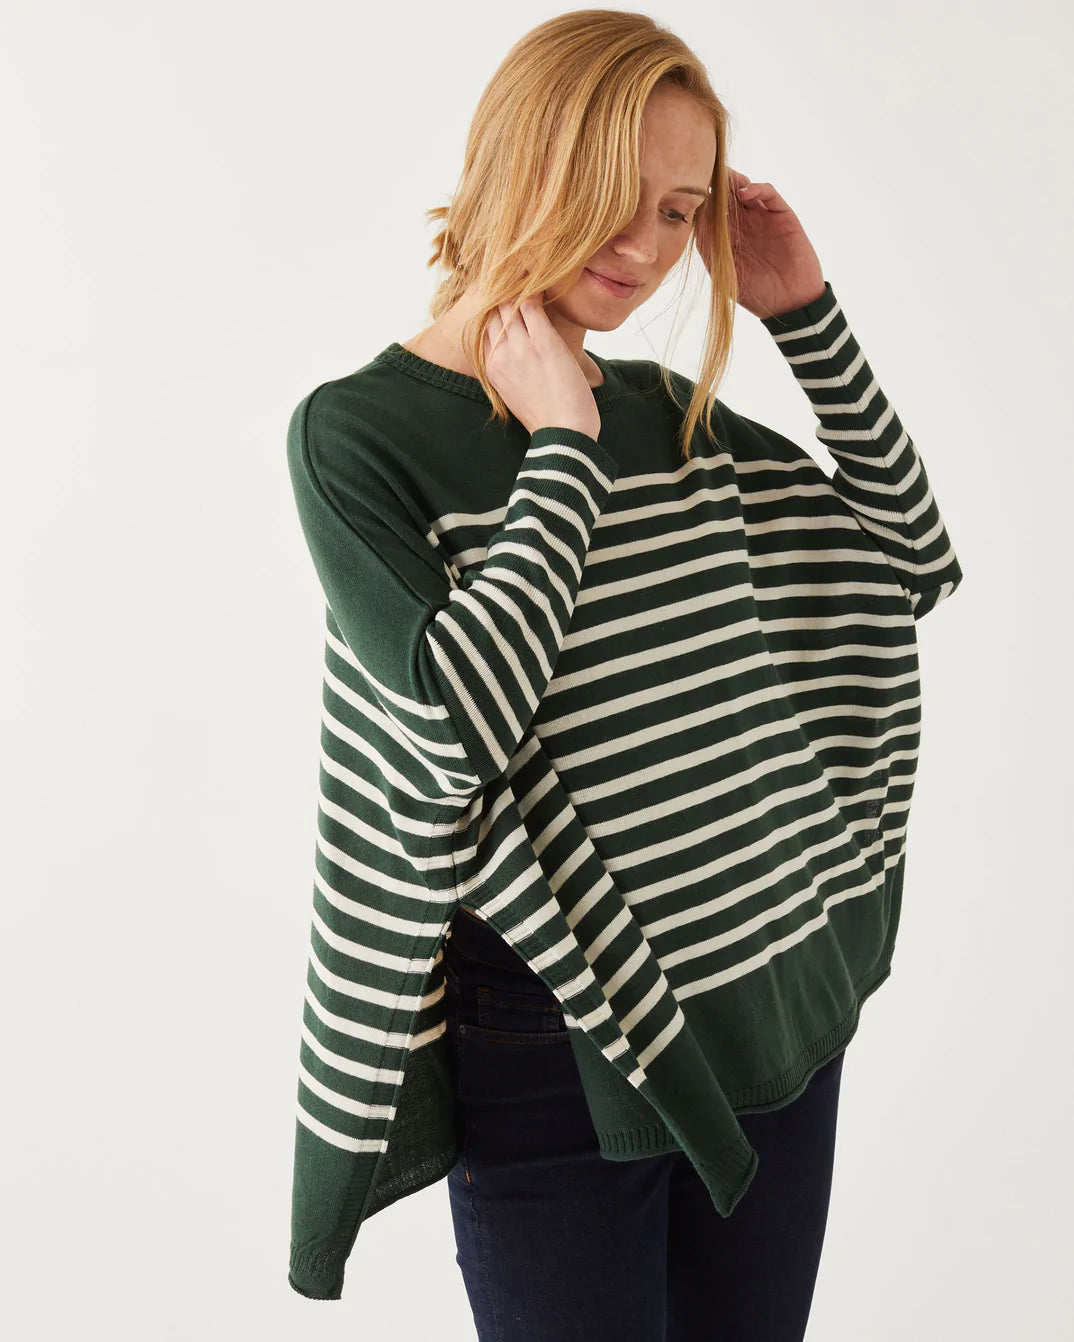 catalina sweater